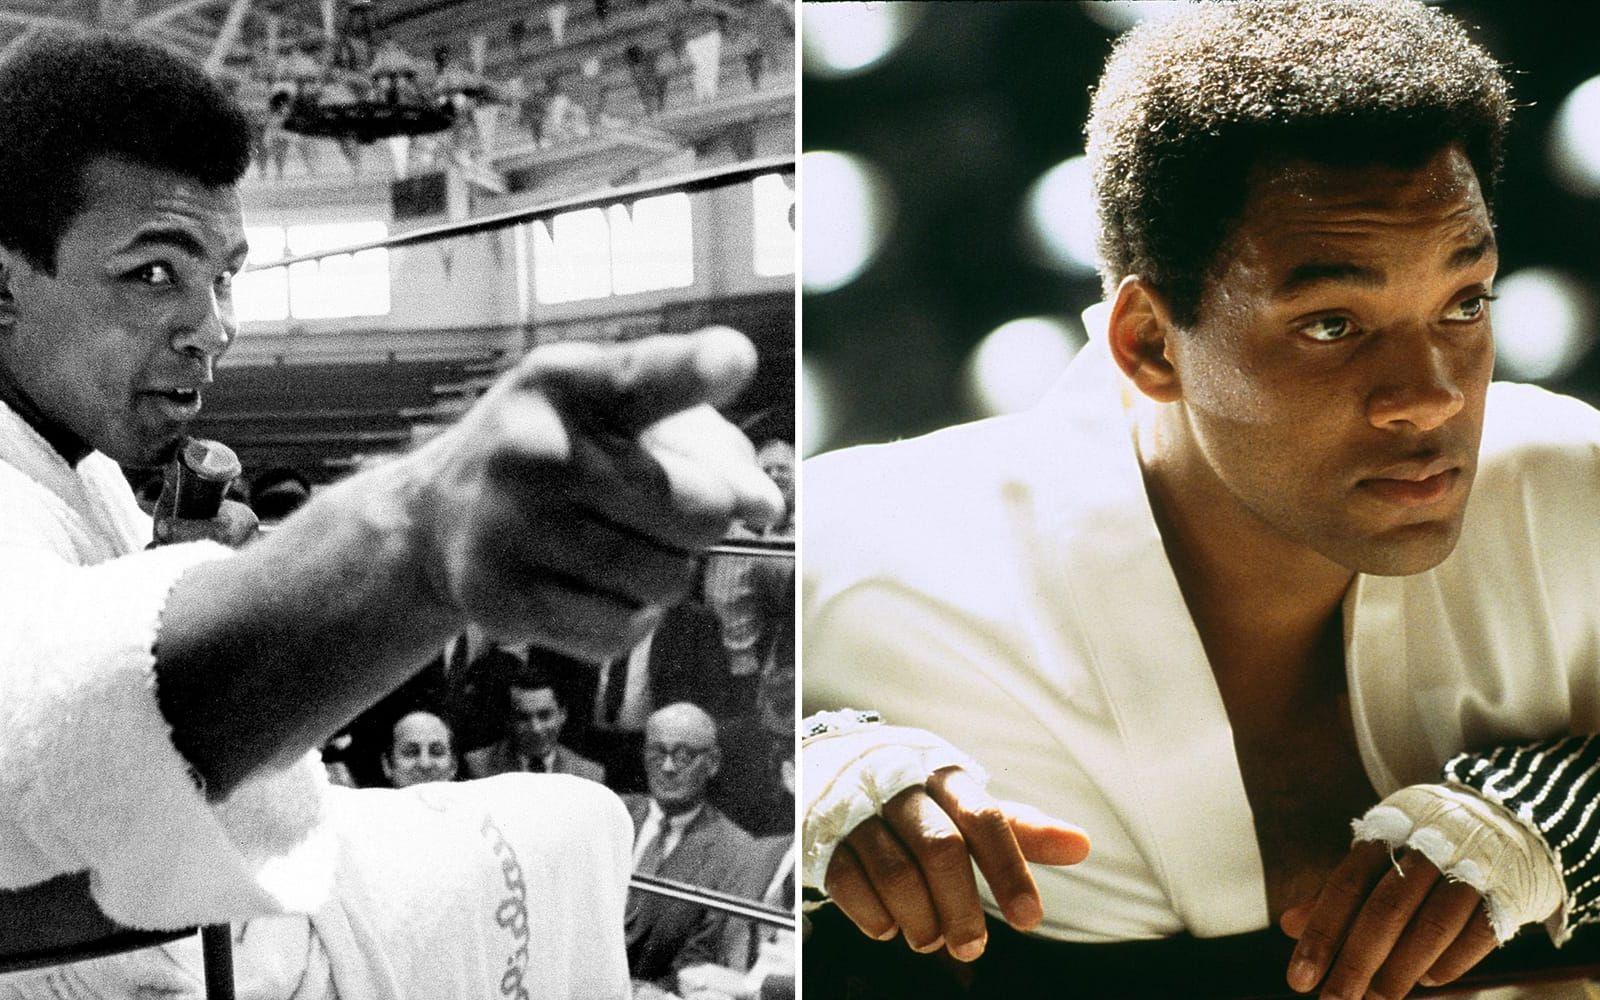 <strong>Originalet: Muhammad Ali. Skådespelaren: Will Smith.</strong> Will Smith nominerades till en Oscar för bästa manliga huvudroll för tolkningen av boxaren Muhammad Ali i ”Ali” (2001). I samband med lanseringen berättade Smith att han hade tackat nej till att spela Ali i åtta års tid. ”Jag ville inte bli killen som förstörde berättelsen om Muhammad Ali”, sa han till ABC 2001. När han till slut tackade ja påbörjade han en två år lång förberedelse för rollen. Smith var senare kistbärare på Alis begravning 2016. Foto: TT/Stella Pictures